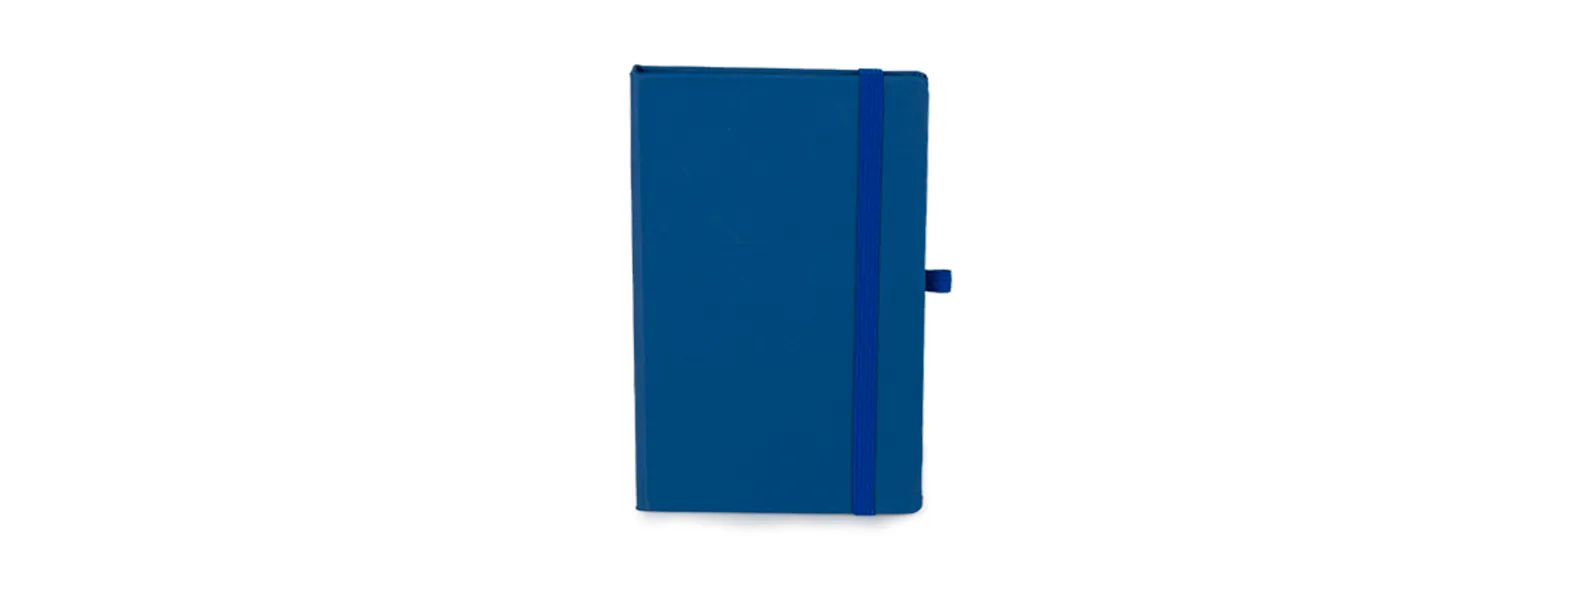 Caderno para anotações azul com capa dura. Conta com 80 folhas não pautadas, marcador de página, porta caneta e elástico para fechamento. Gramatura da folha de 70 g/m2.